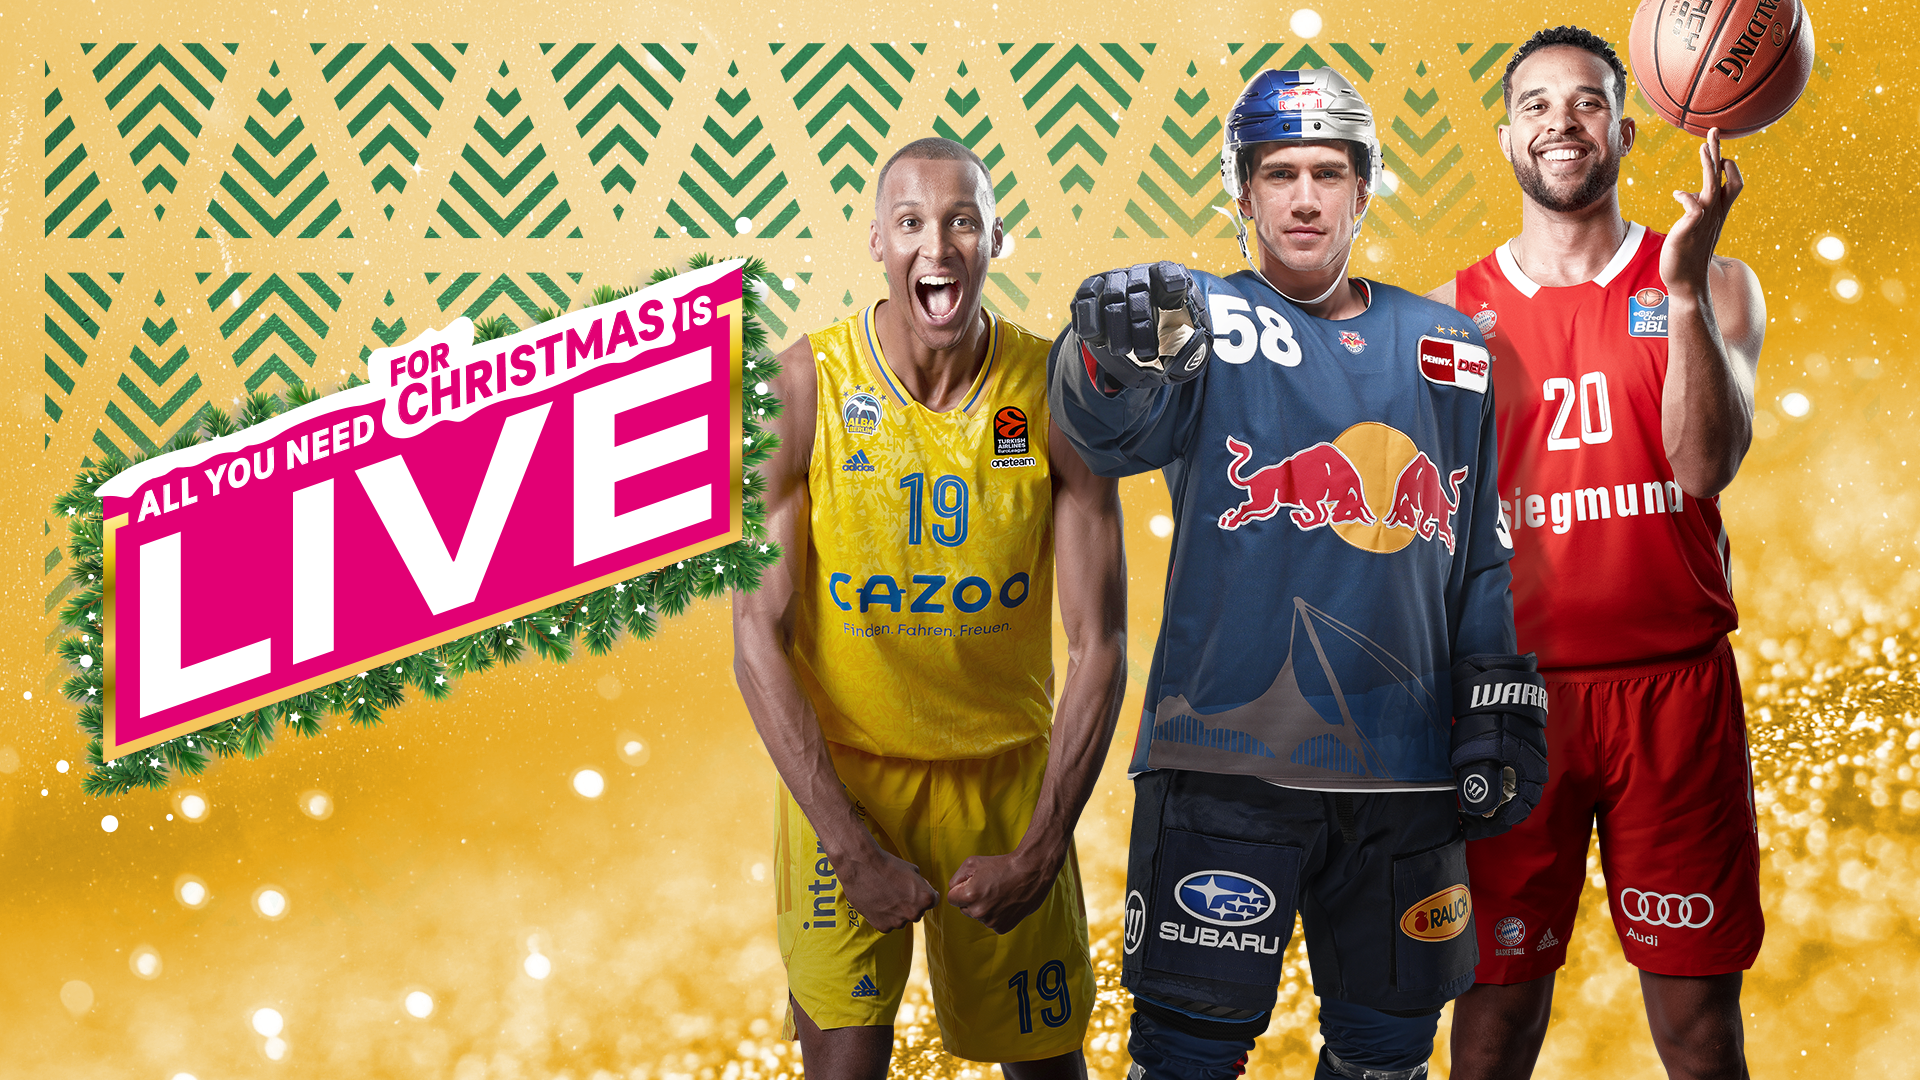 All you need for Christmas is LIVE“ Gewinnt eines von 5 MagentaSport-Jahresabos!